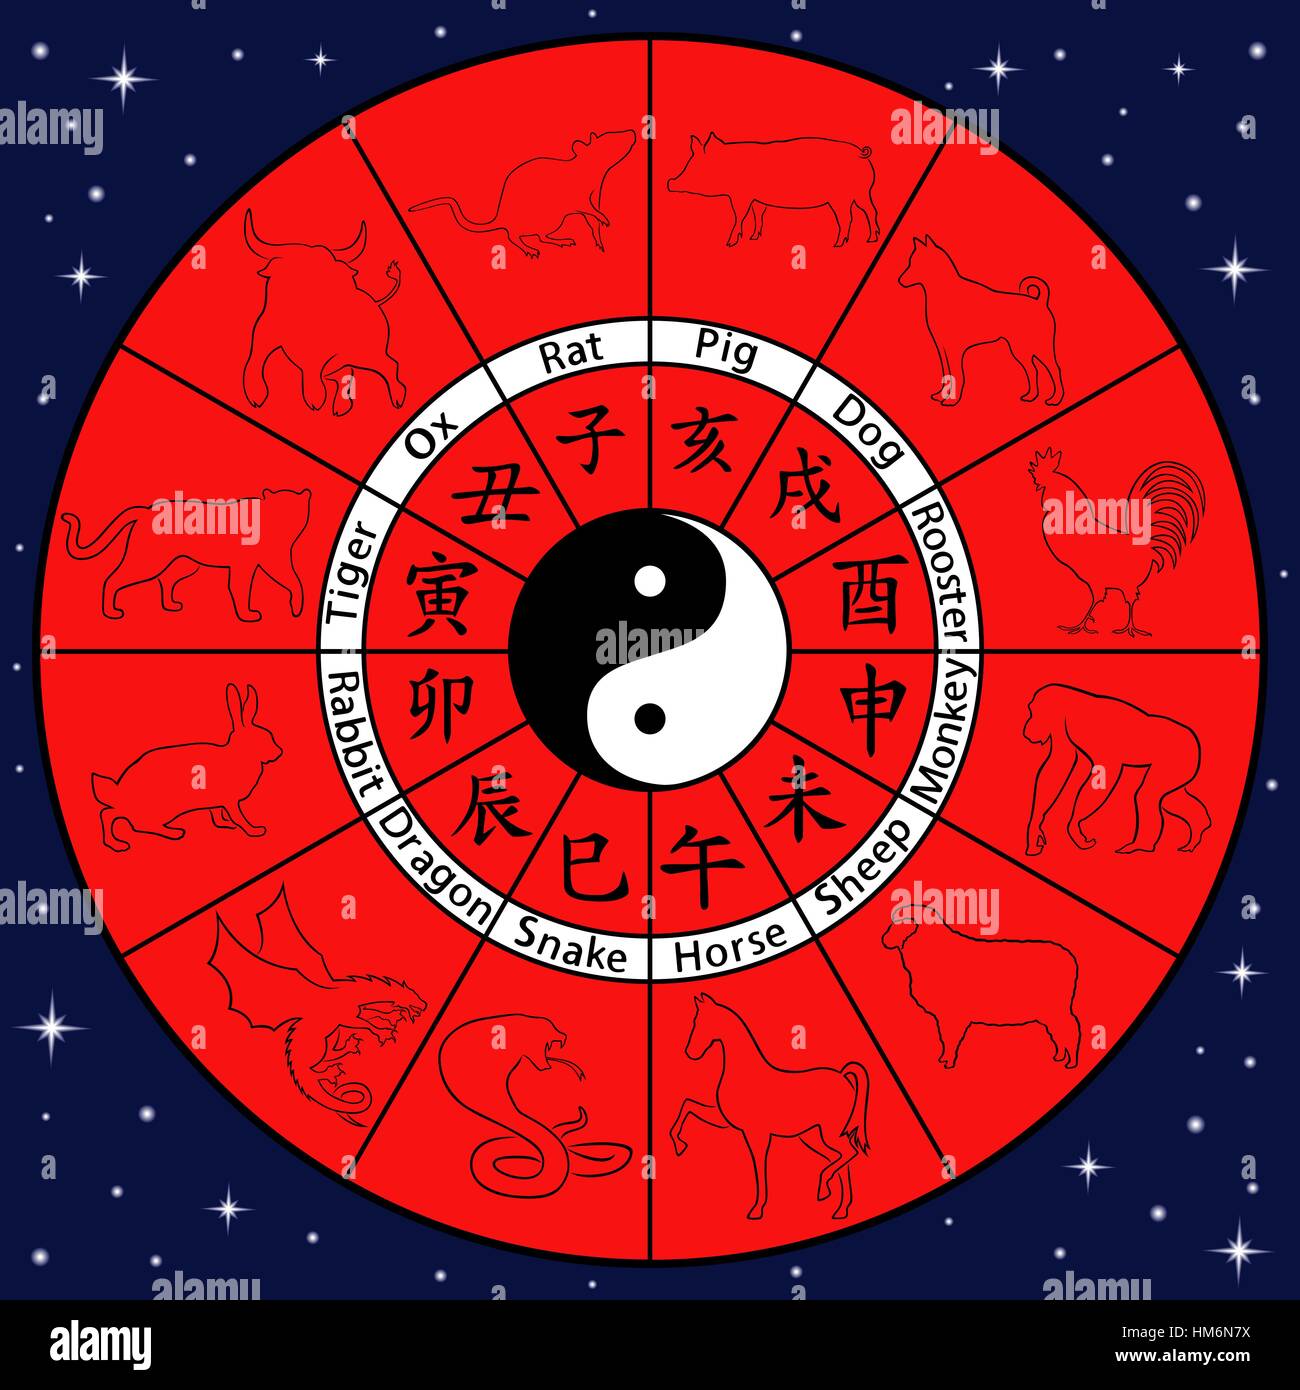 Zodiaco Cinese con simboli di animali sul cerchio e di Yin e Yang nel centro, illustrazione vettoriale principalmente in blu e rosso Illustrazione Vettoriale